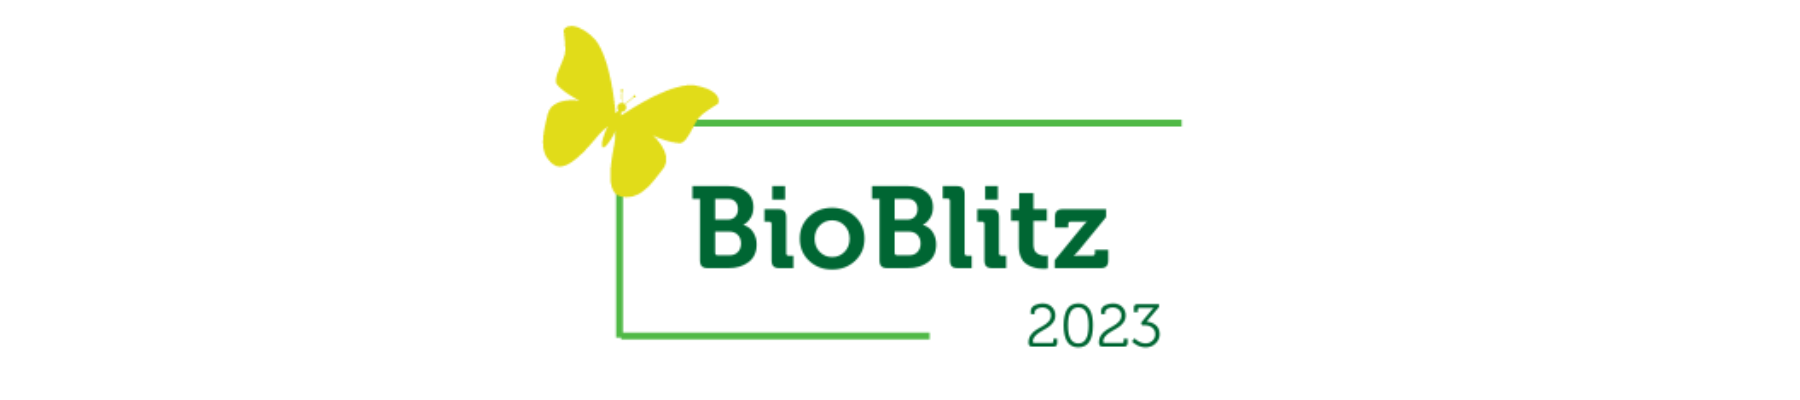 BioBlitz 2023 logo